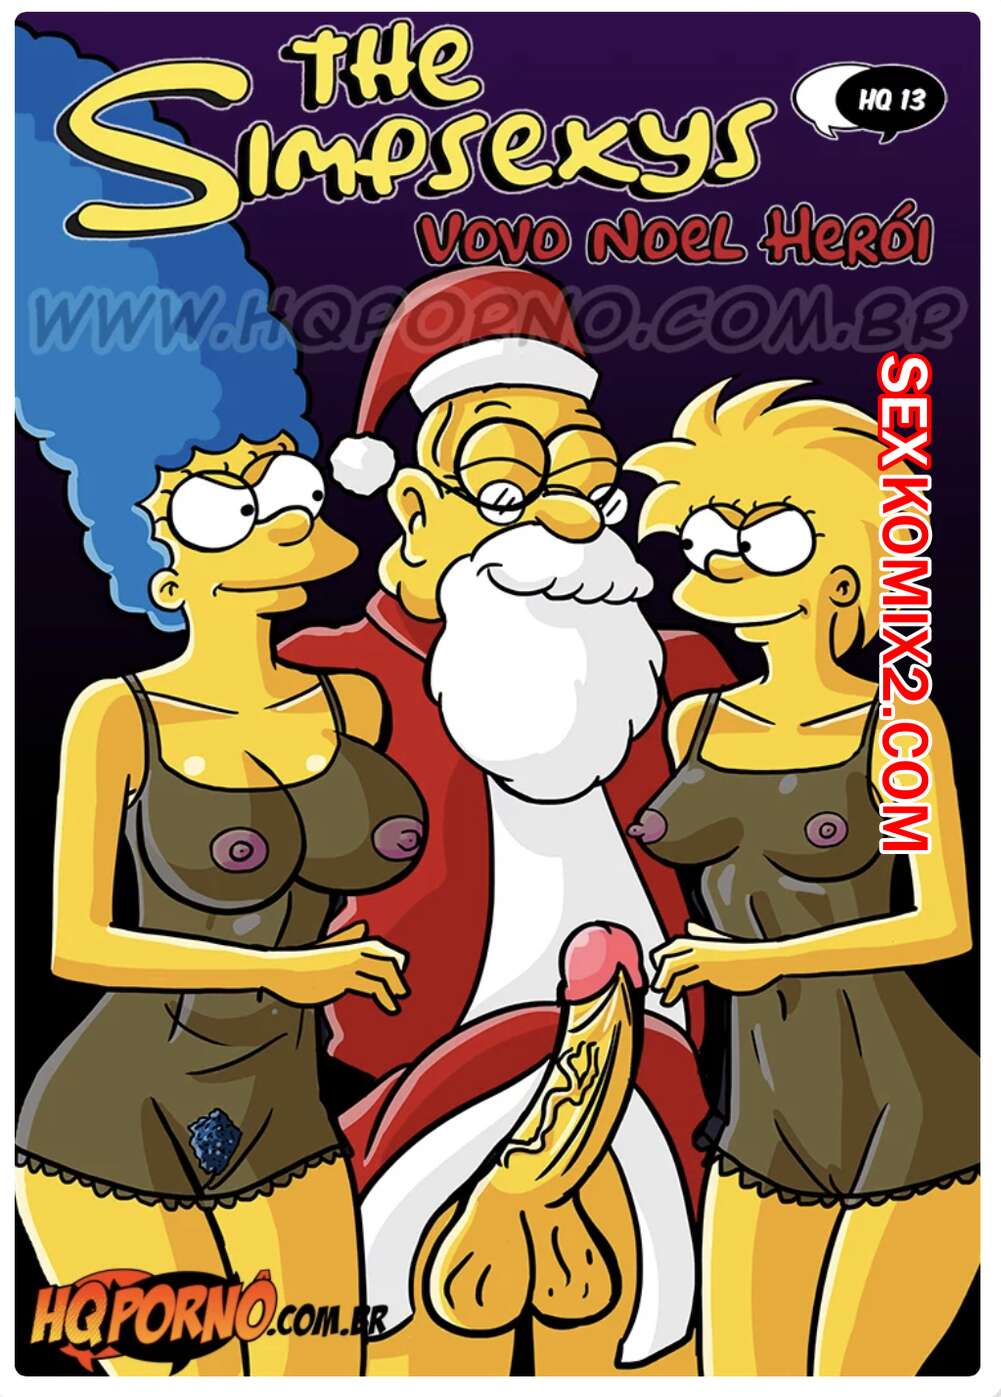 Санта трахает всех - Порно Игры